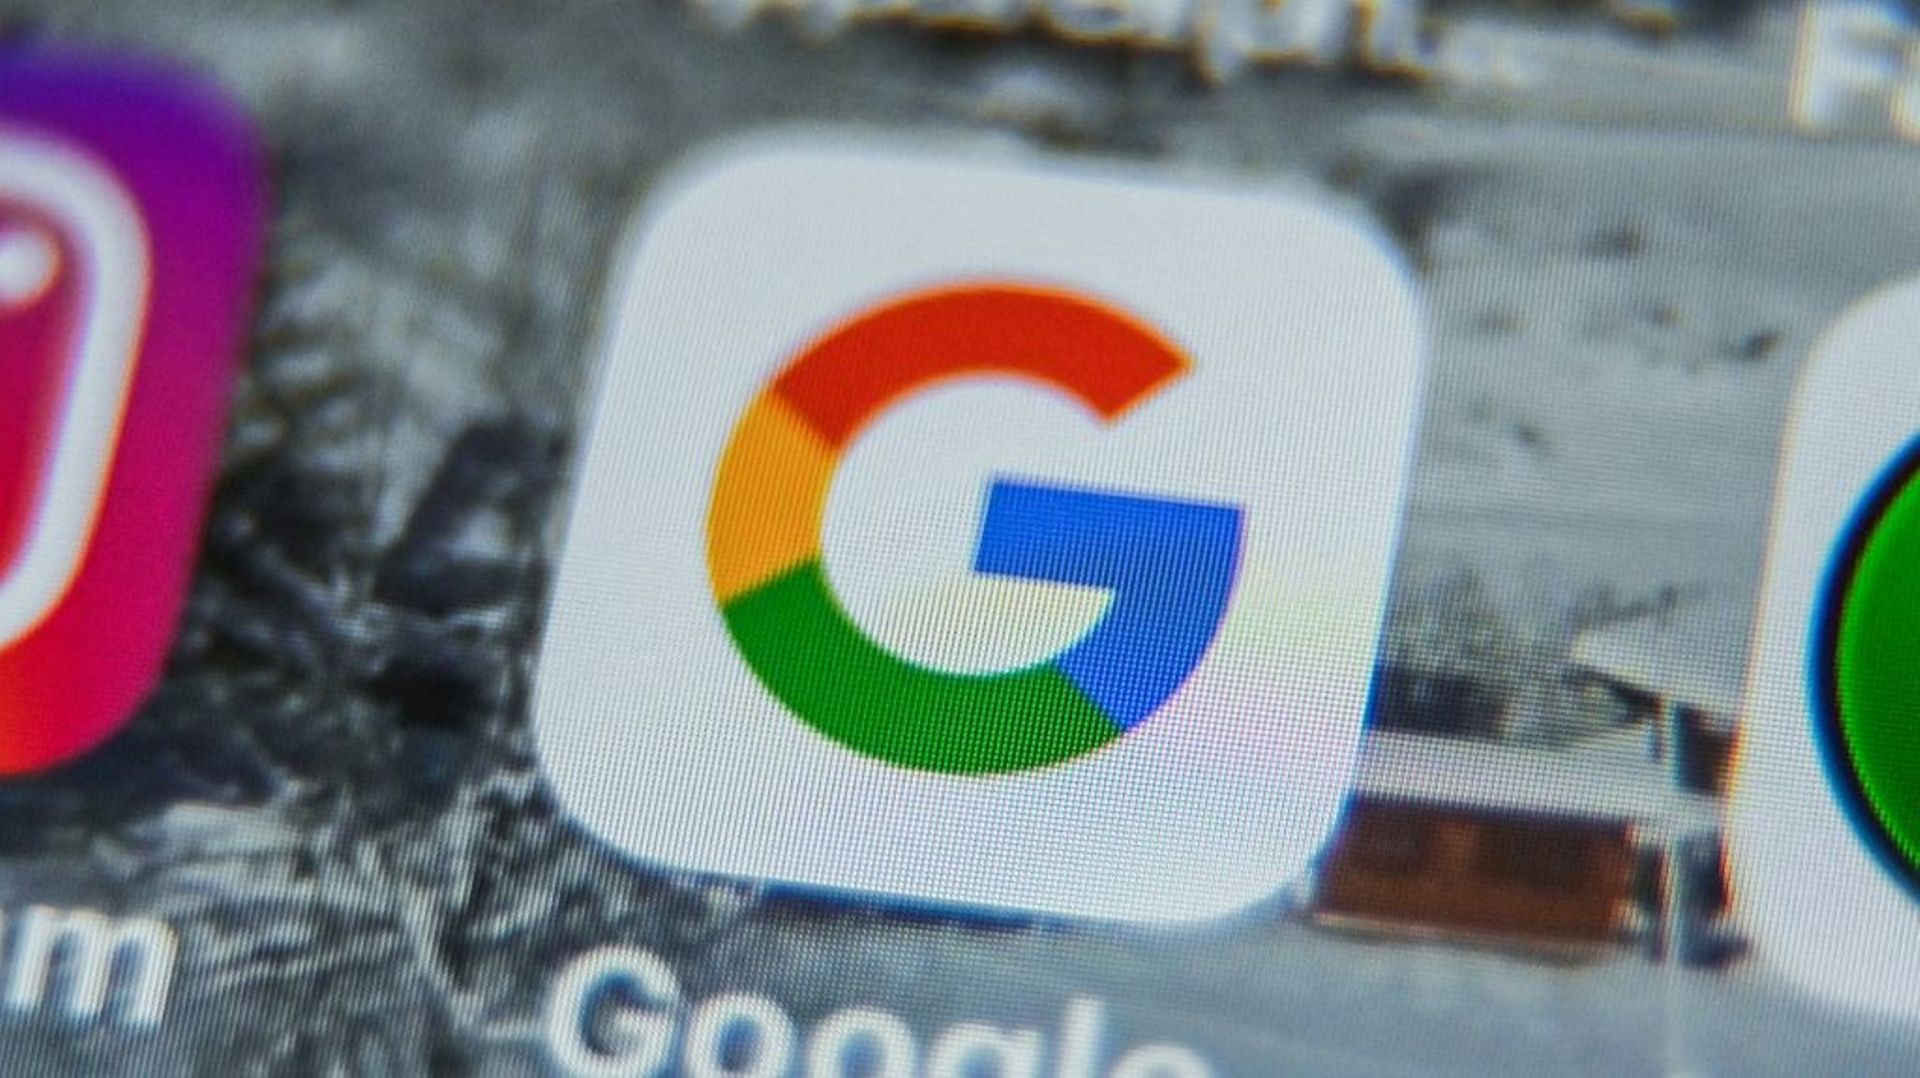 Droits voisins : Google fait appel de son amende de 500 millions d’euros en France